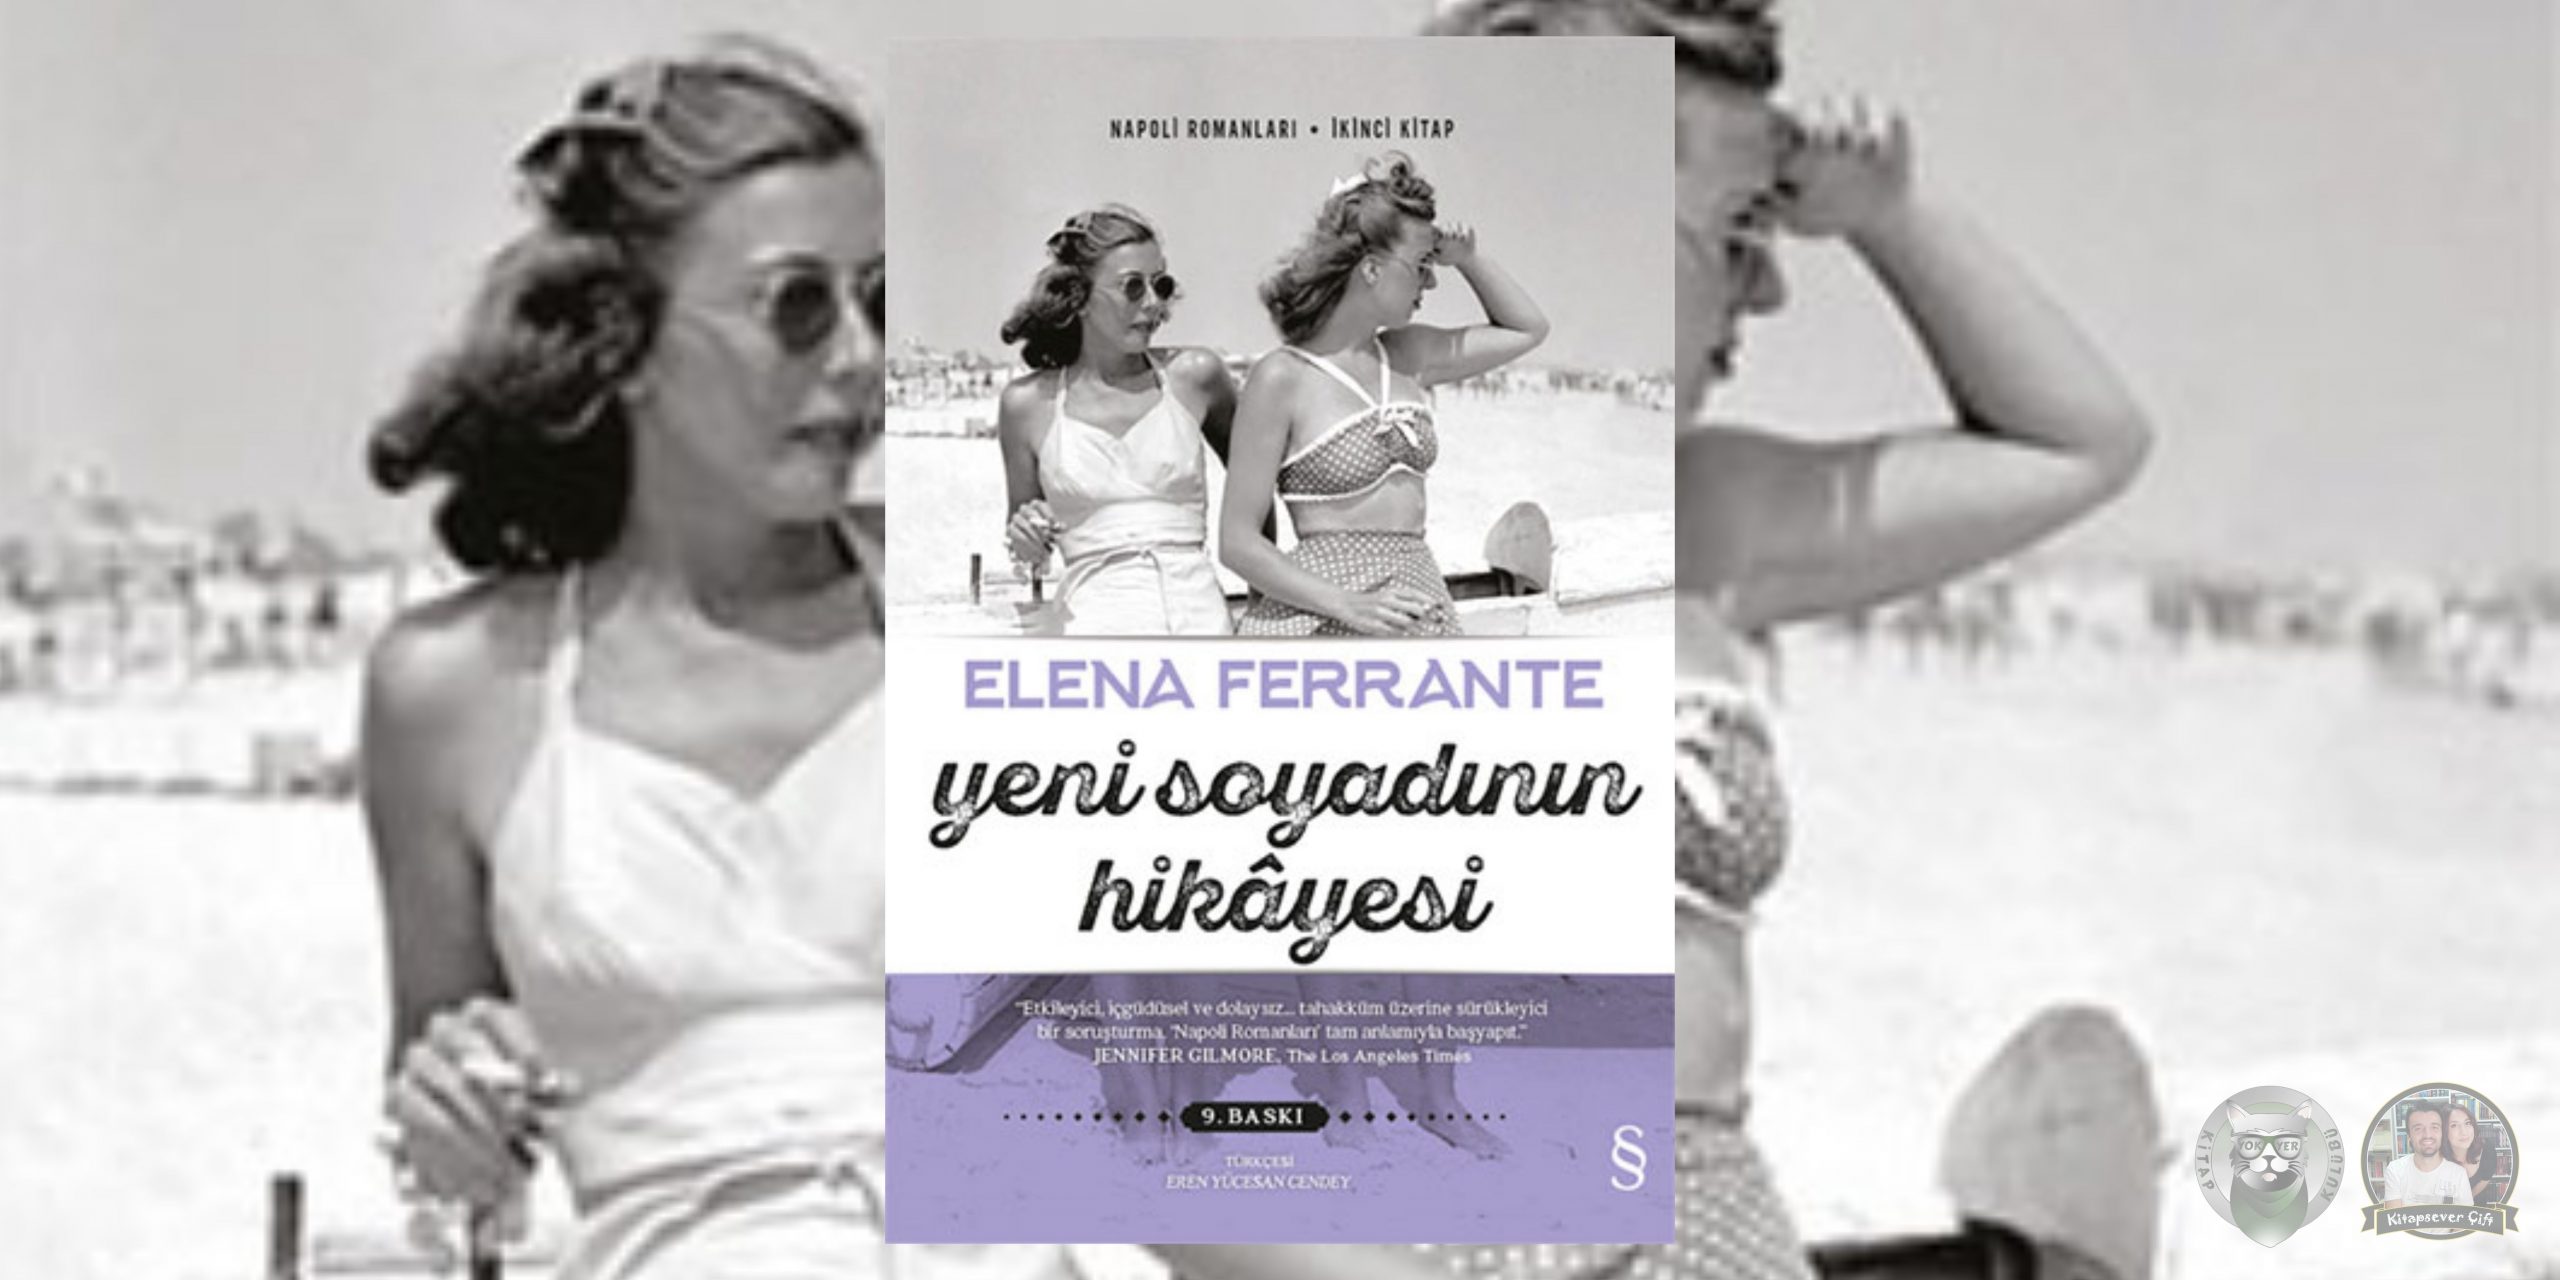 elena ferrante - napoli romanları serisi 2 – yeni soyadinin hikayesi scaled